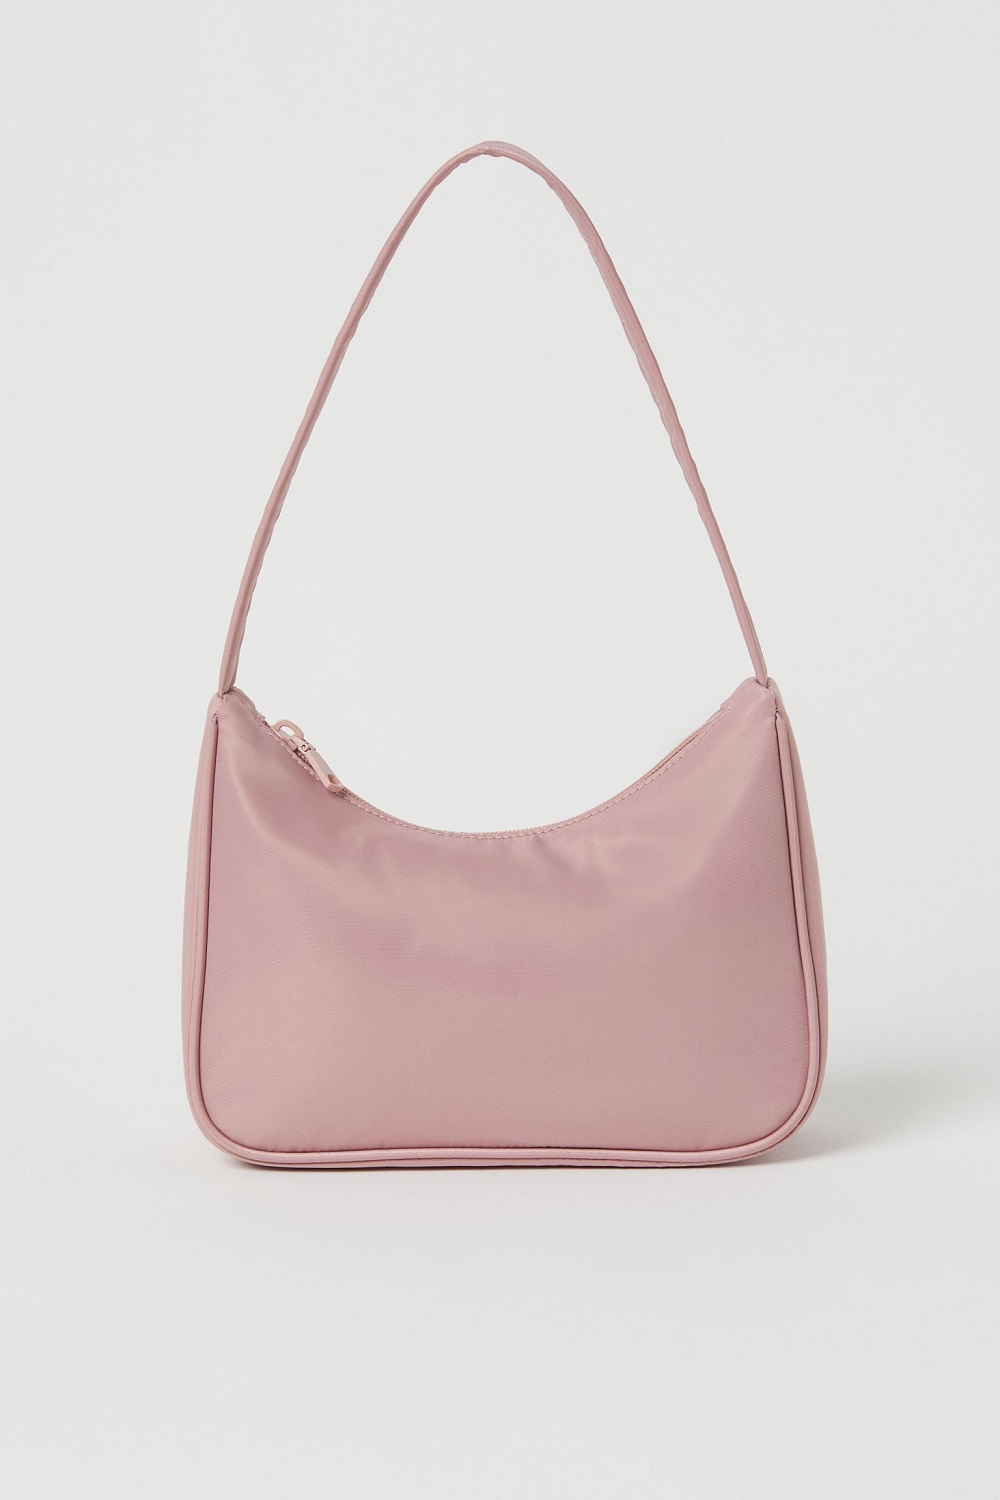 H&M torbe u boji proljeće ljeto 2021.